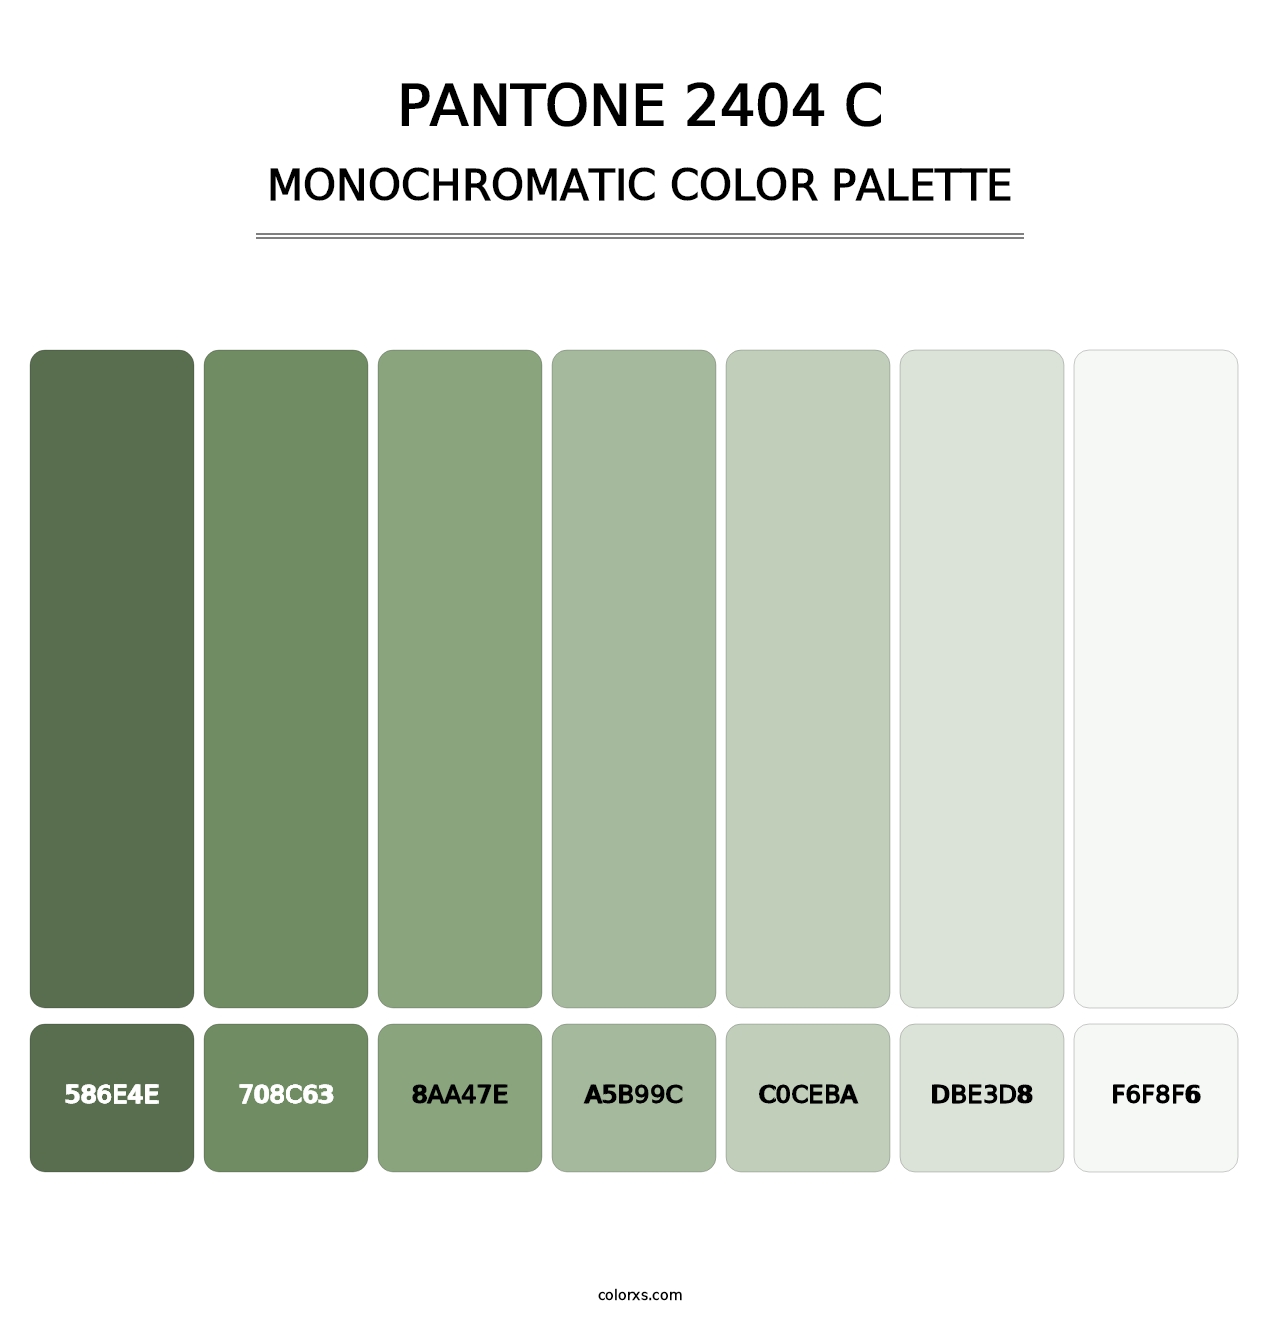 PANTONE 2404 C - Monochromatic Color Palette